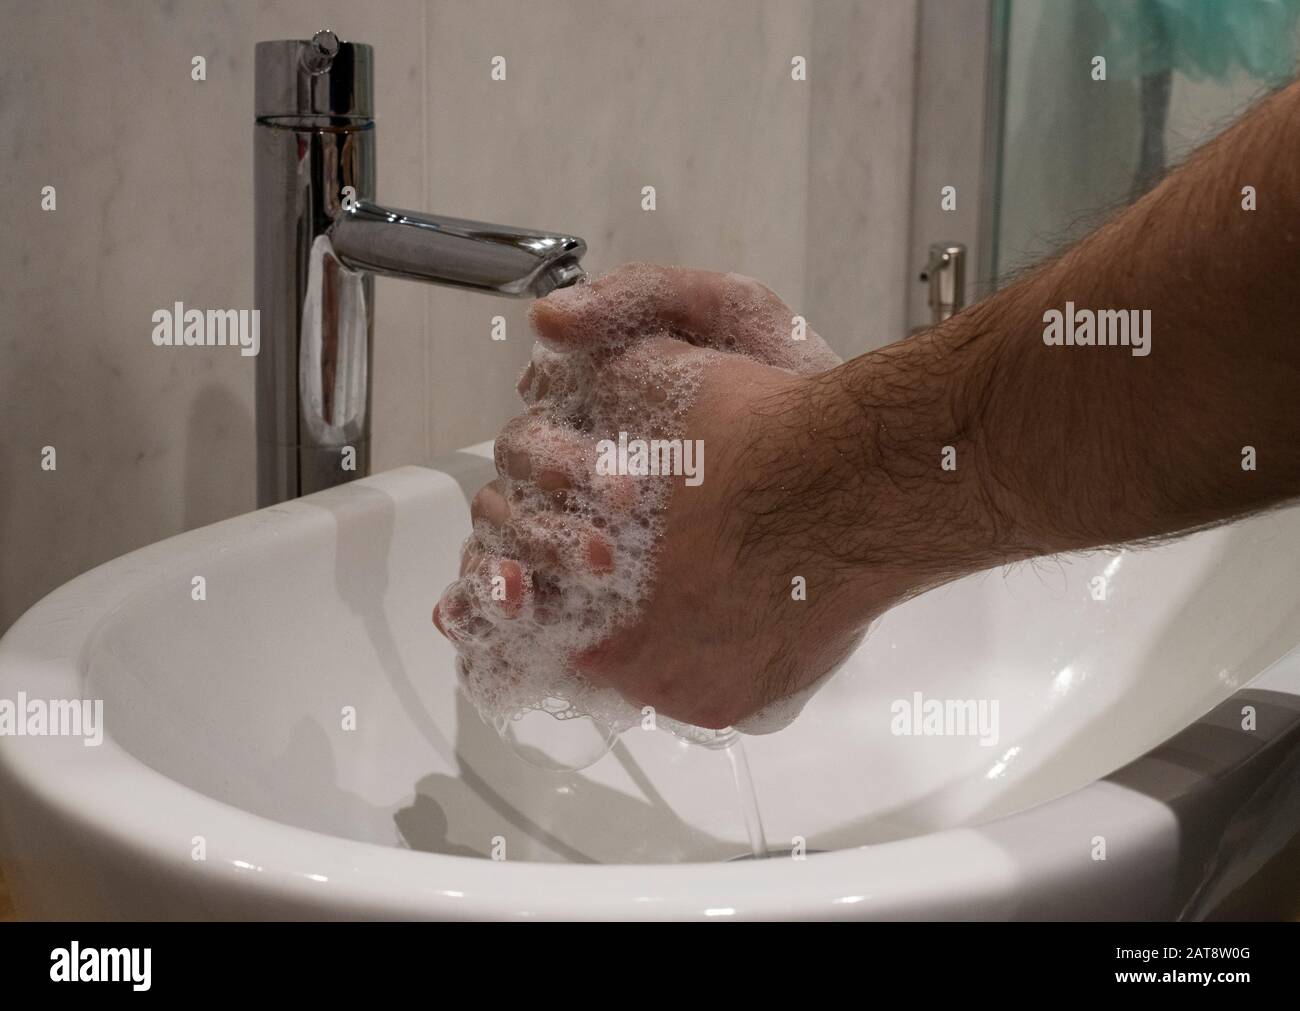 Closep sulle mani di maschio insaponata durante il lavaggio corretto come indicato DA OMS per la prevenzione di influenza e coronavirus Foto Stock